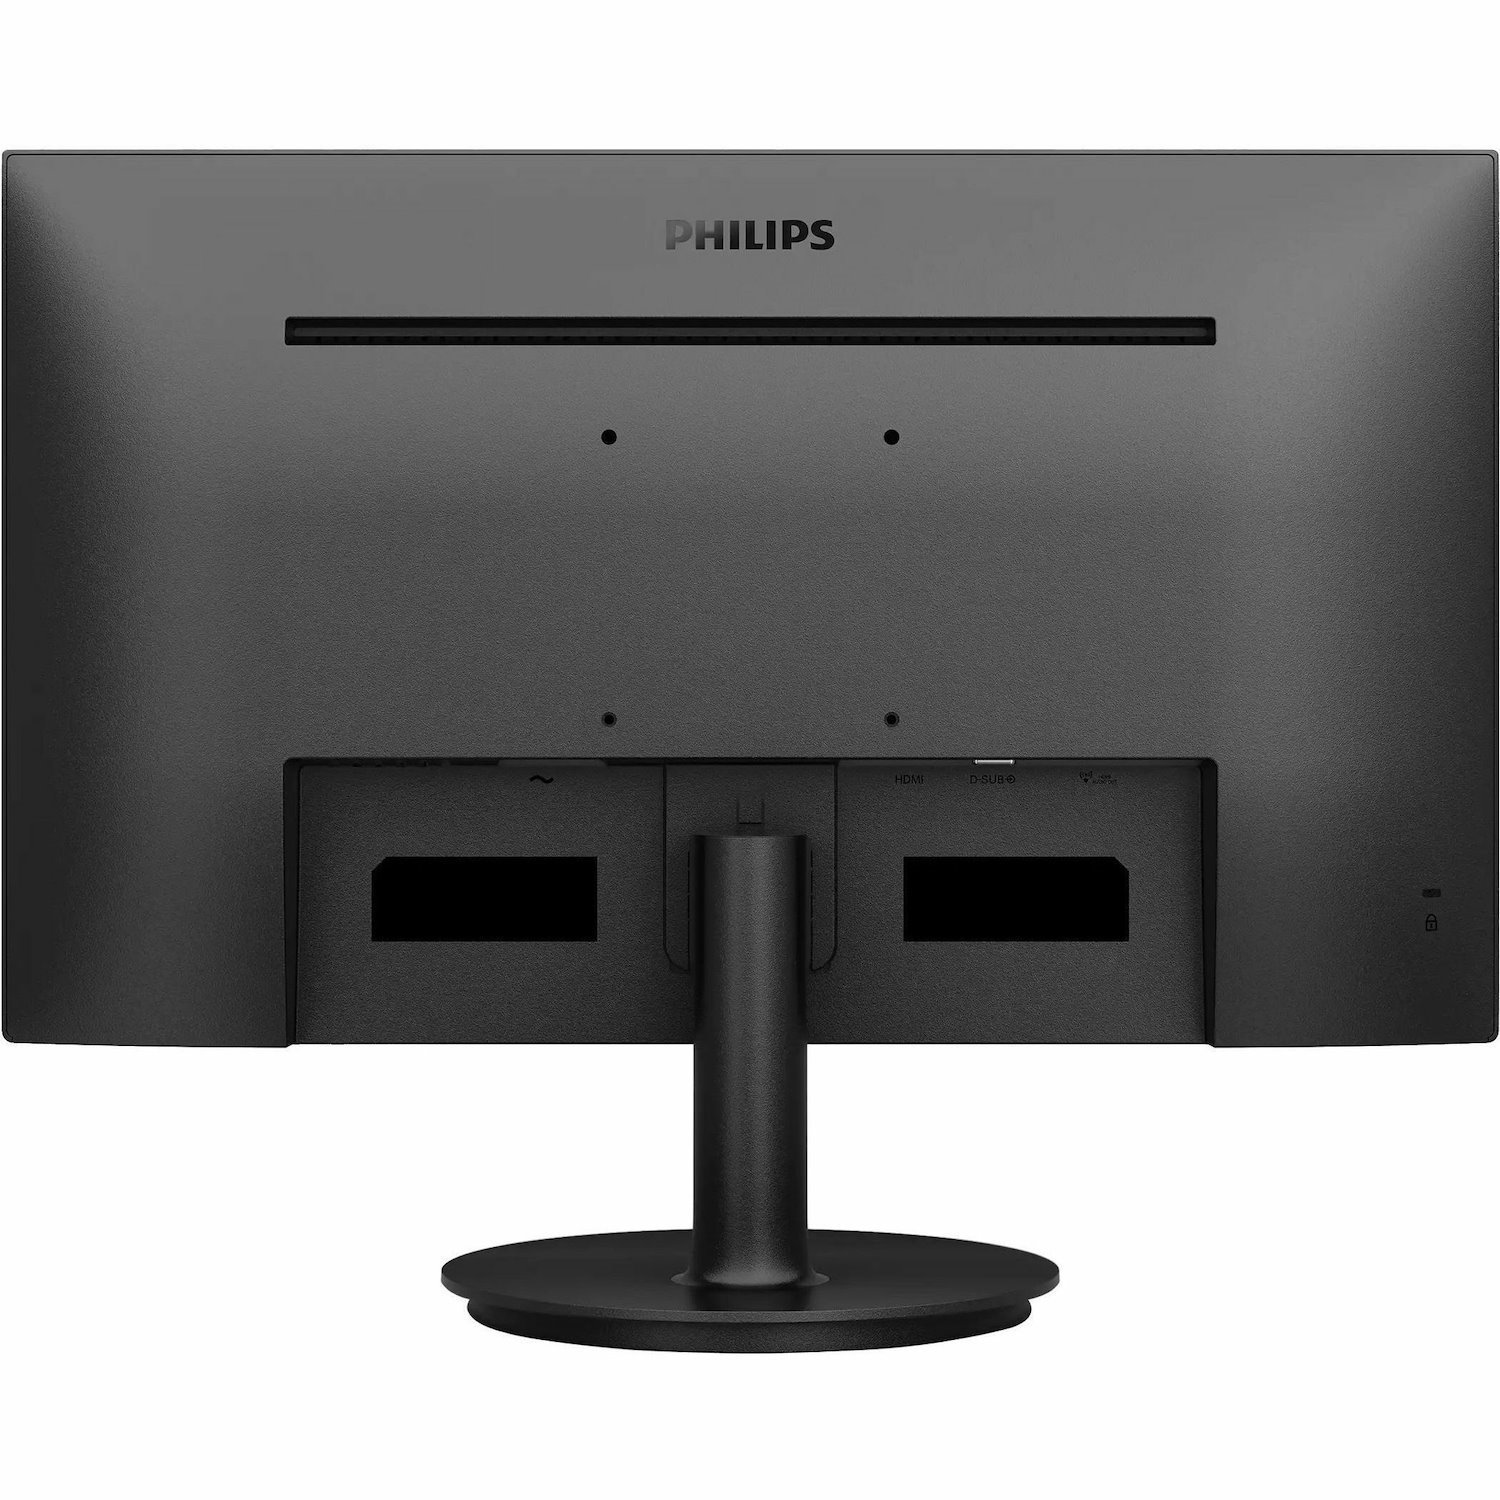 Philips V-line 241V8B 24" Class Full HD LED Monitor - 16:9 - Textured Black